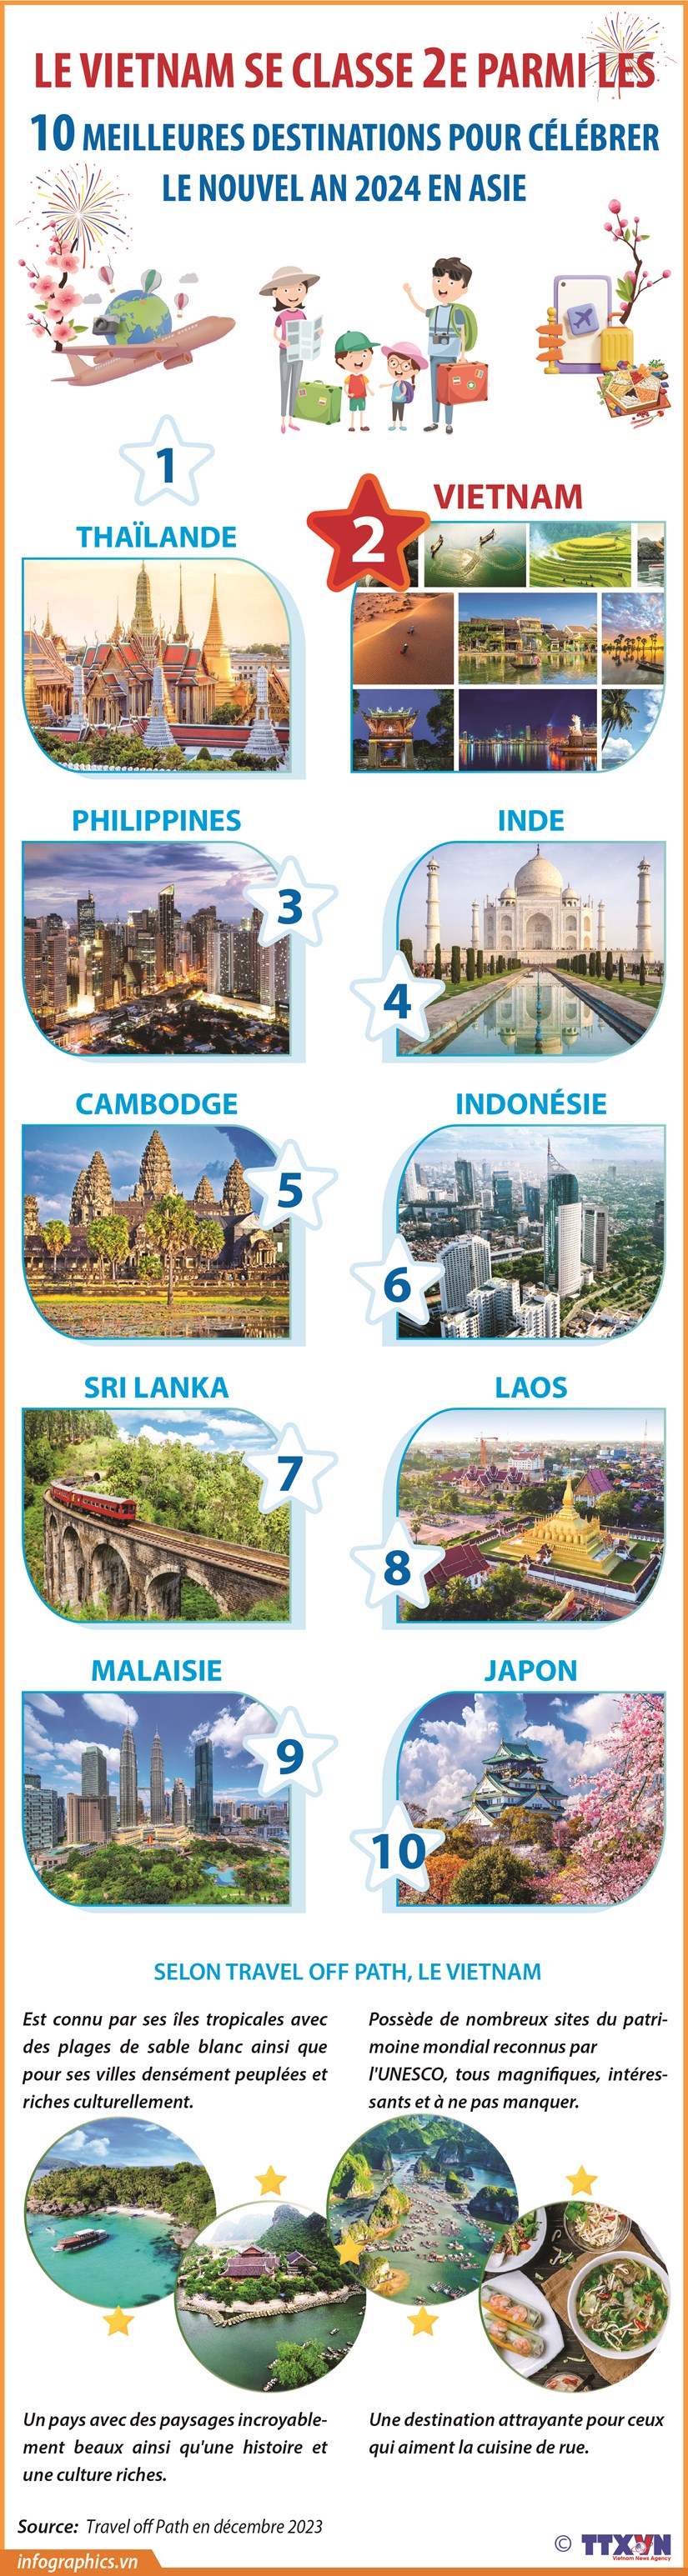 Le Vietnam se classe 2e parmi les 10 meilleures destinations pour celebrer le Nouvel An 2024 en Asie hinh anh 1